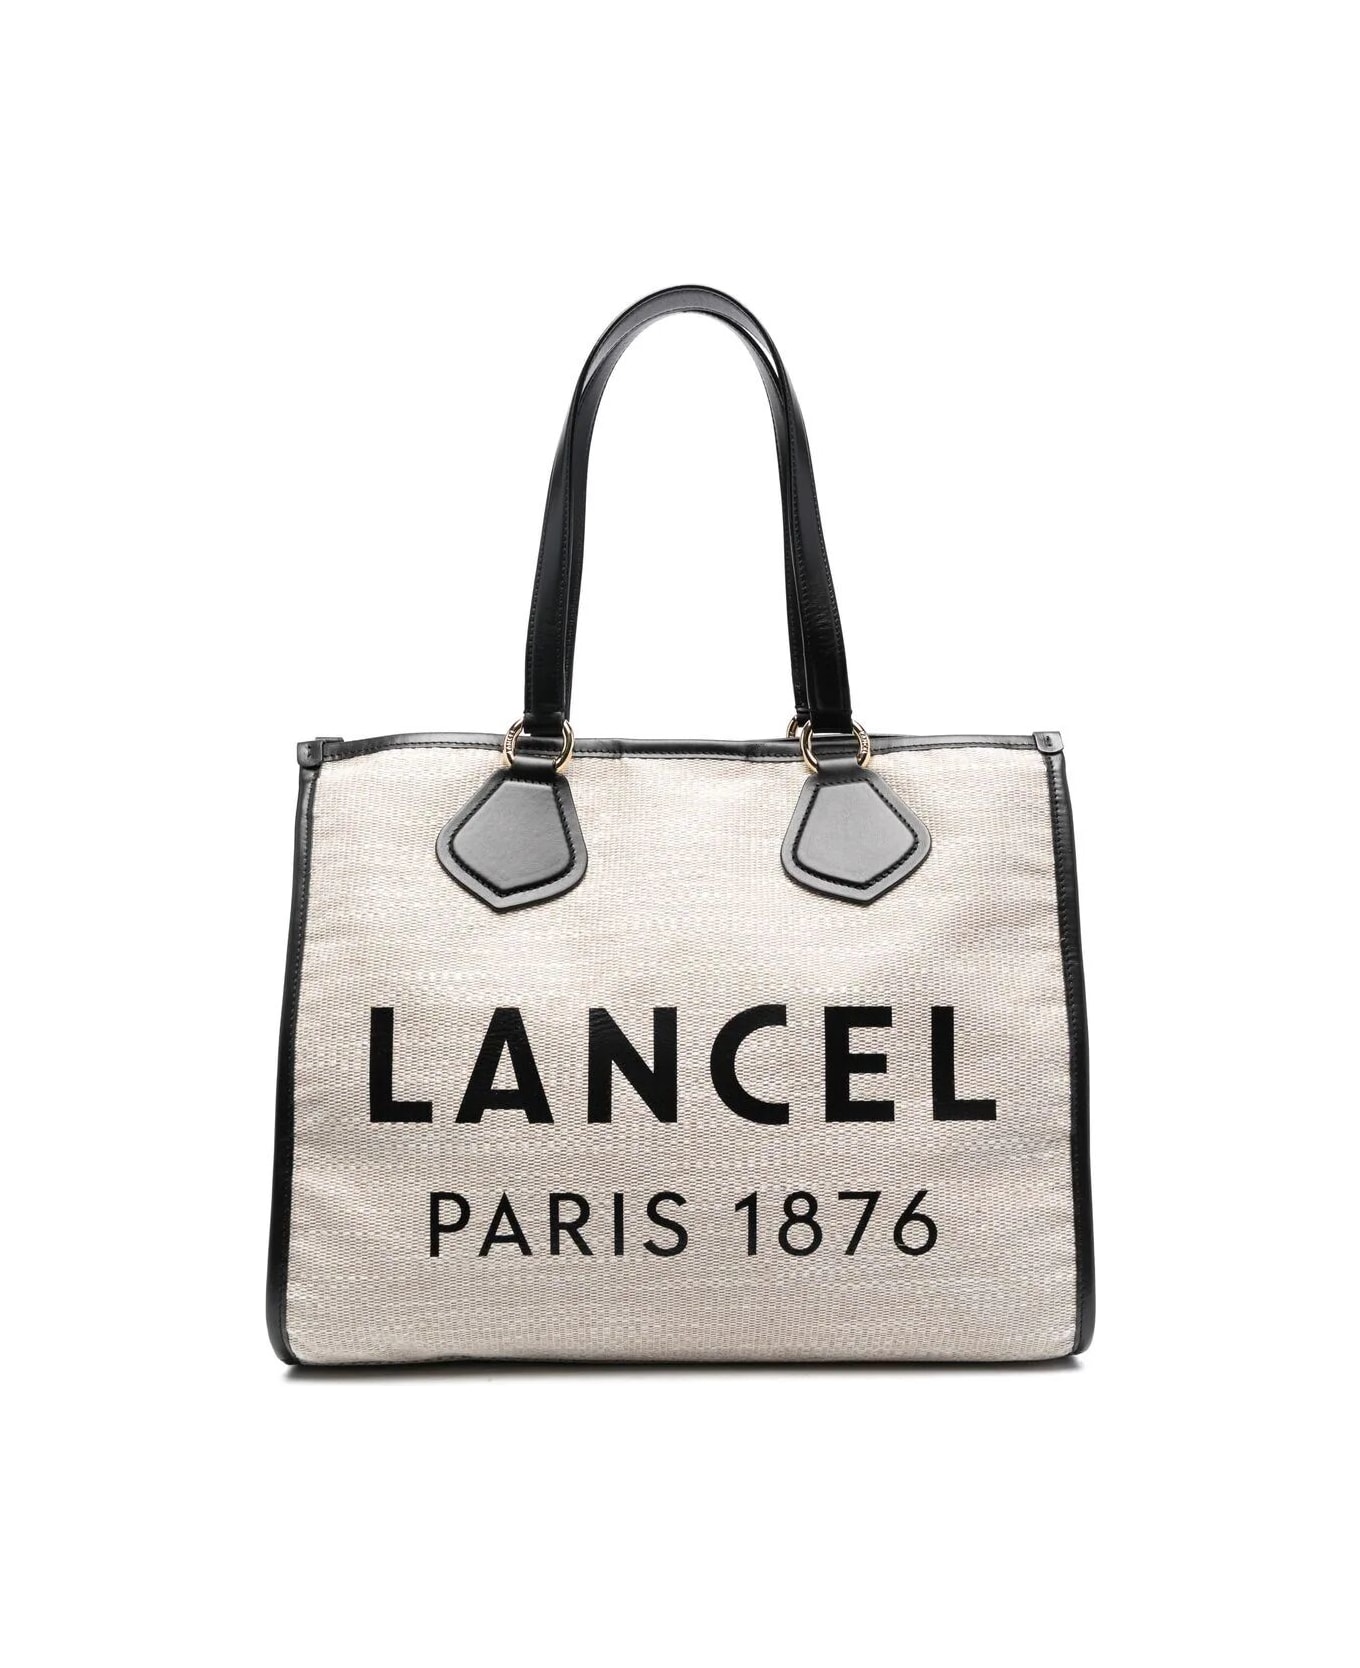 Lancel Summer Tote - L414201l Beach Bag - A Natural Blk トートバッグ